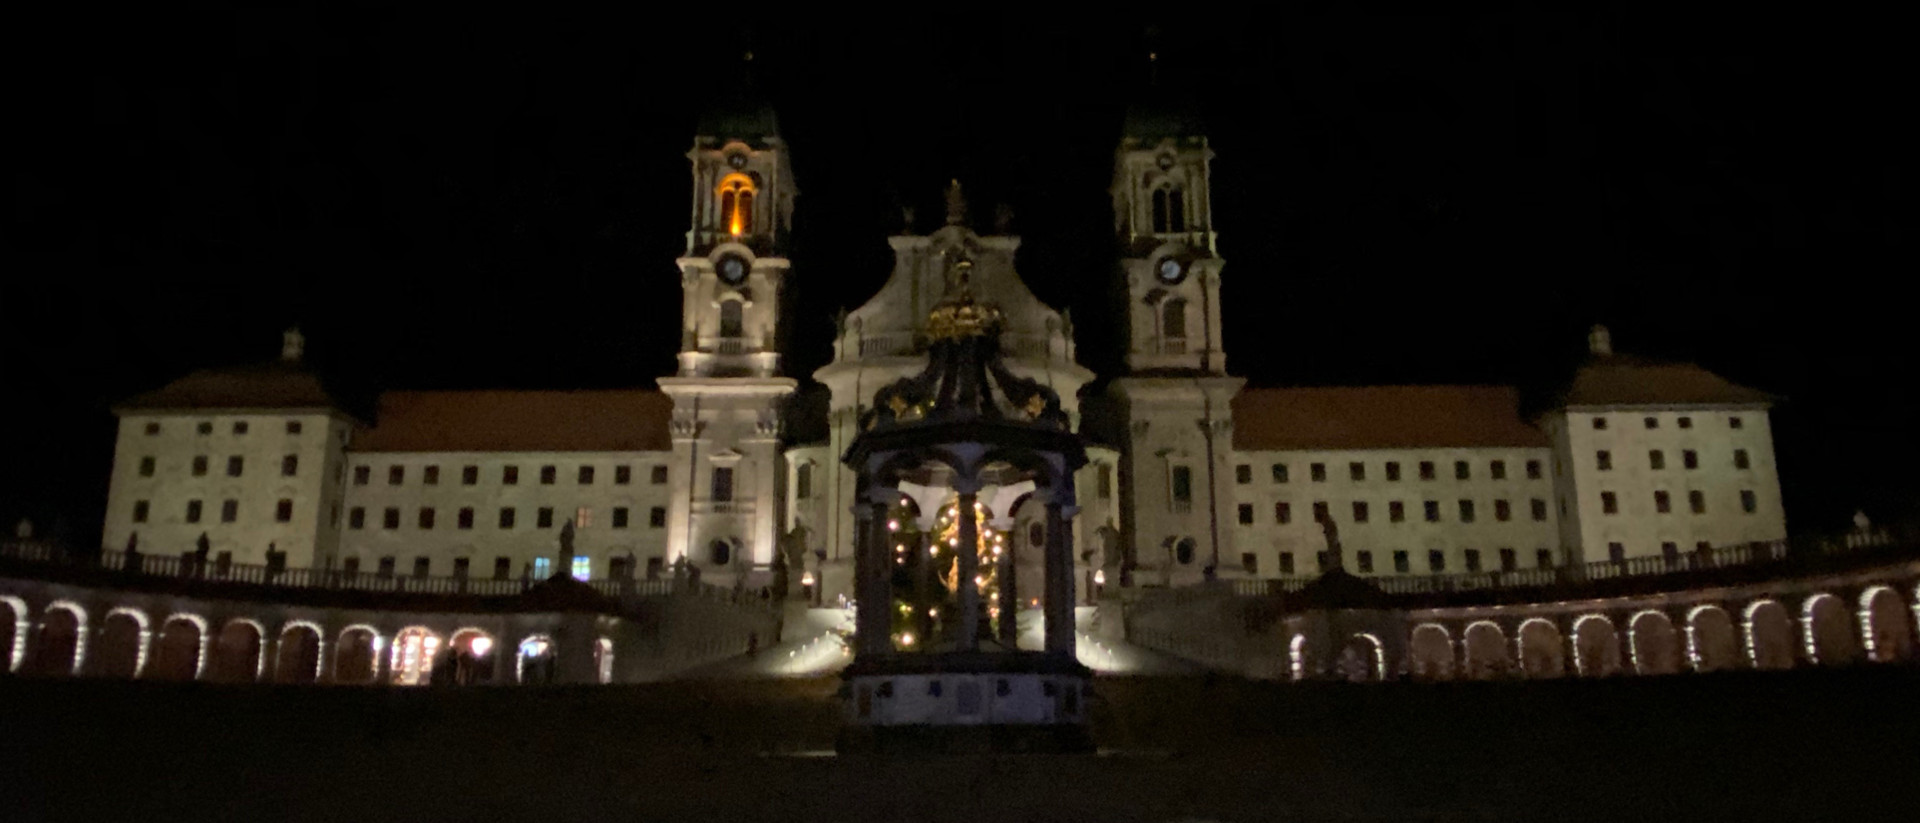 Neue Beleuchtung der Klosterfassade Einsiedeln.